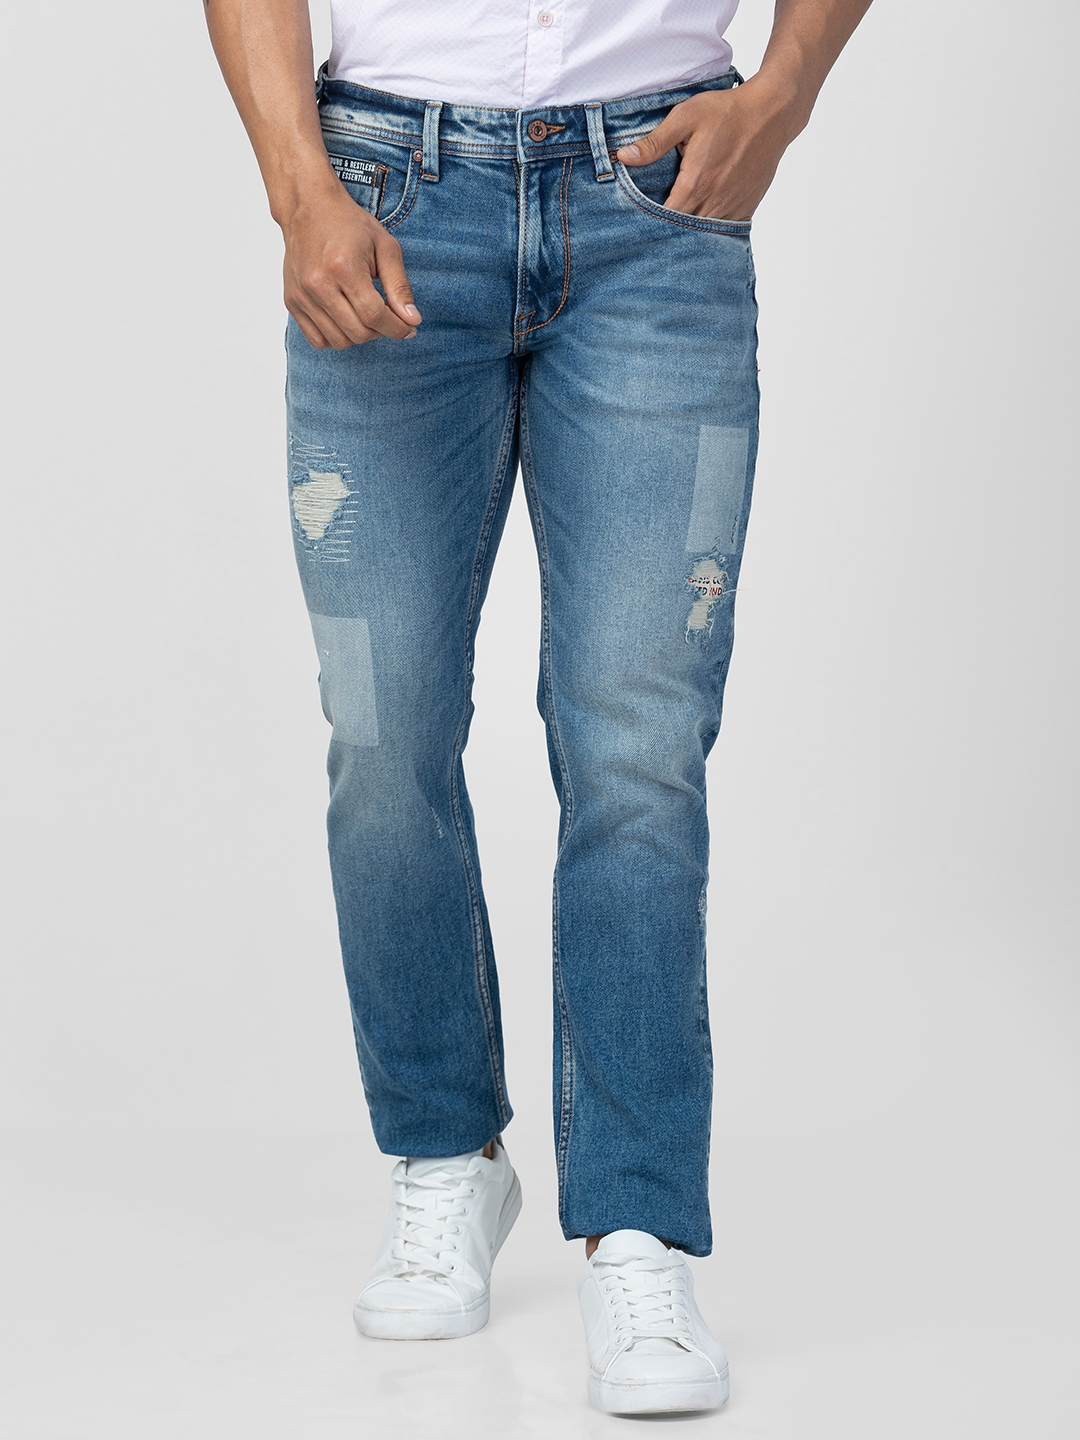 Men's Blue Cotton Jeans